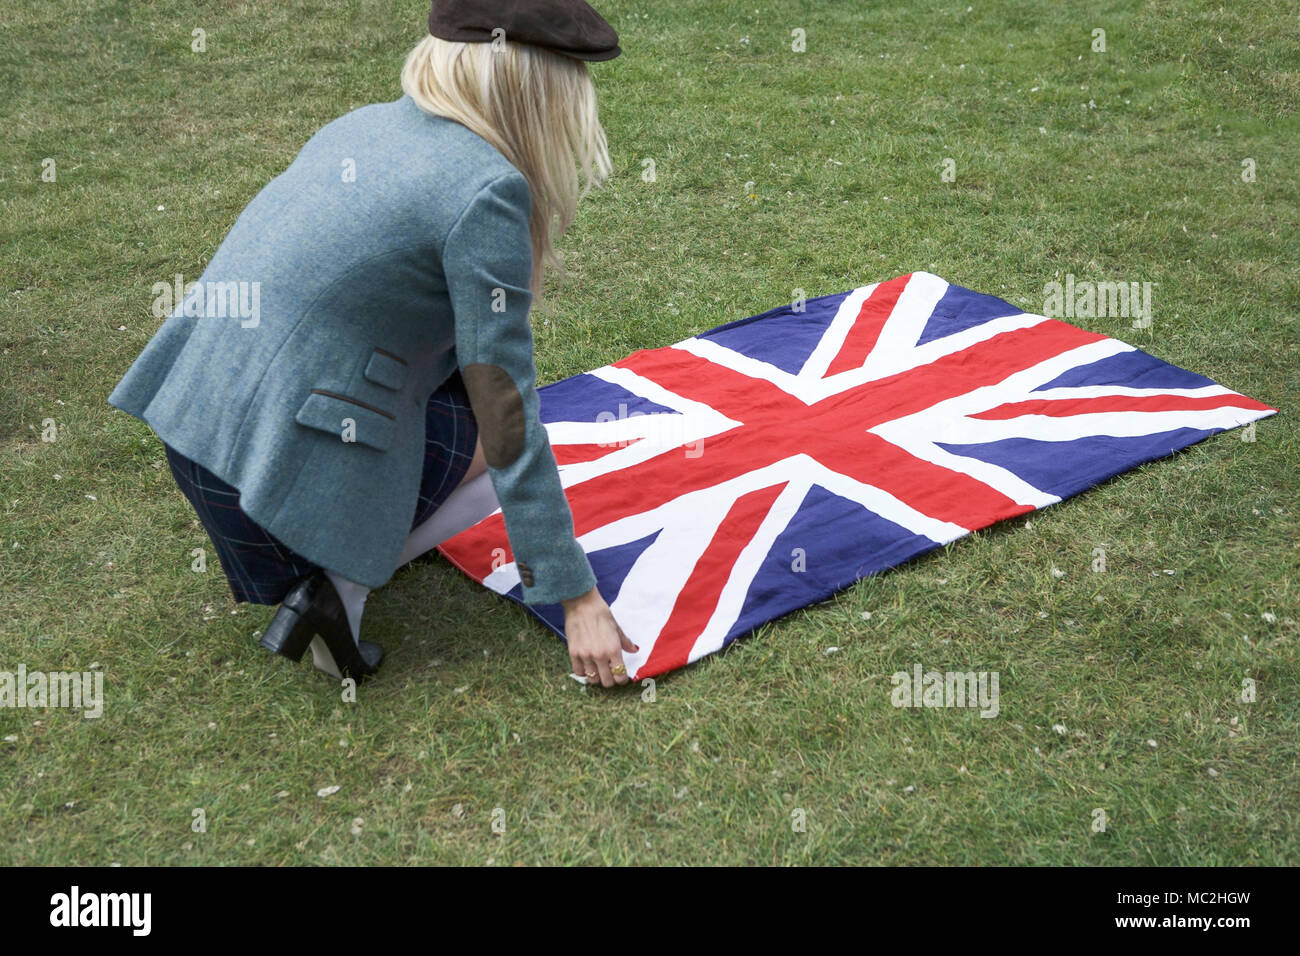 Britishness. British symbols: Union Jack Towel. British country clothing: Tweed Jacket. British democracy. Brexit Stock Photo